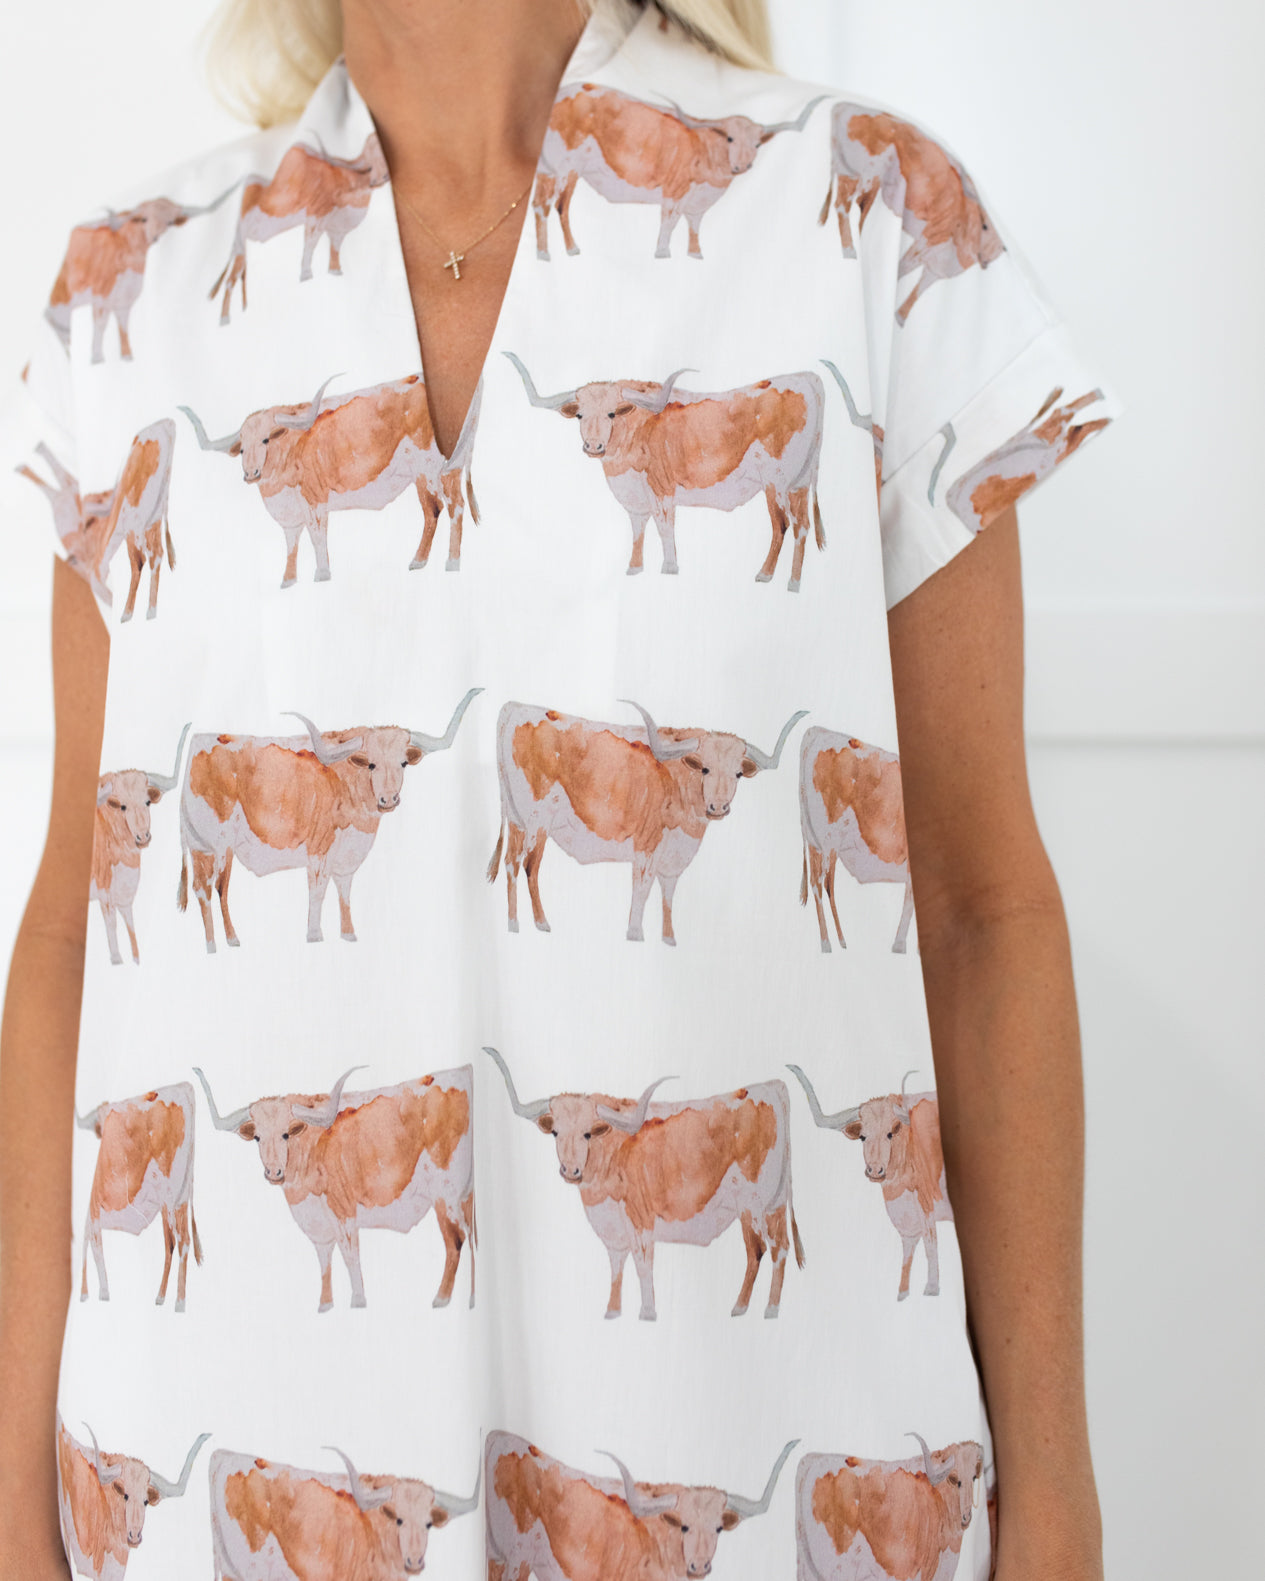 Steer Nancy Dress by Brooke Wright